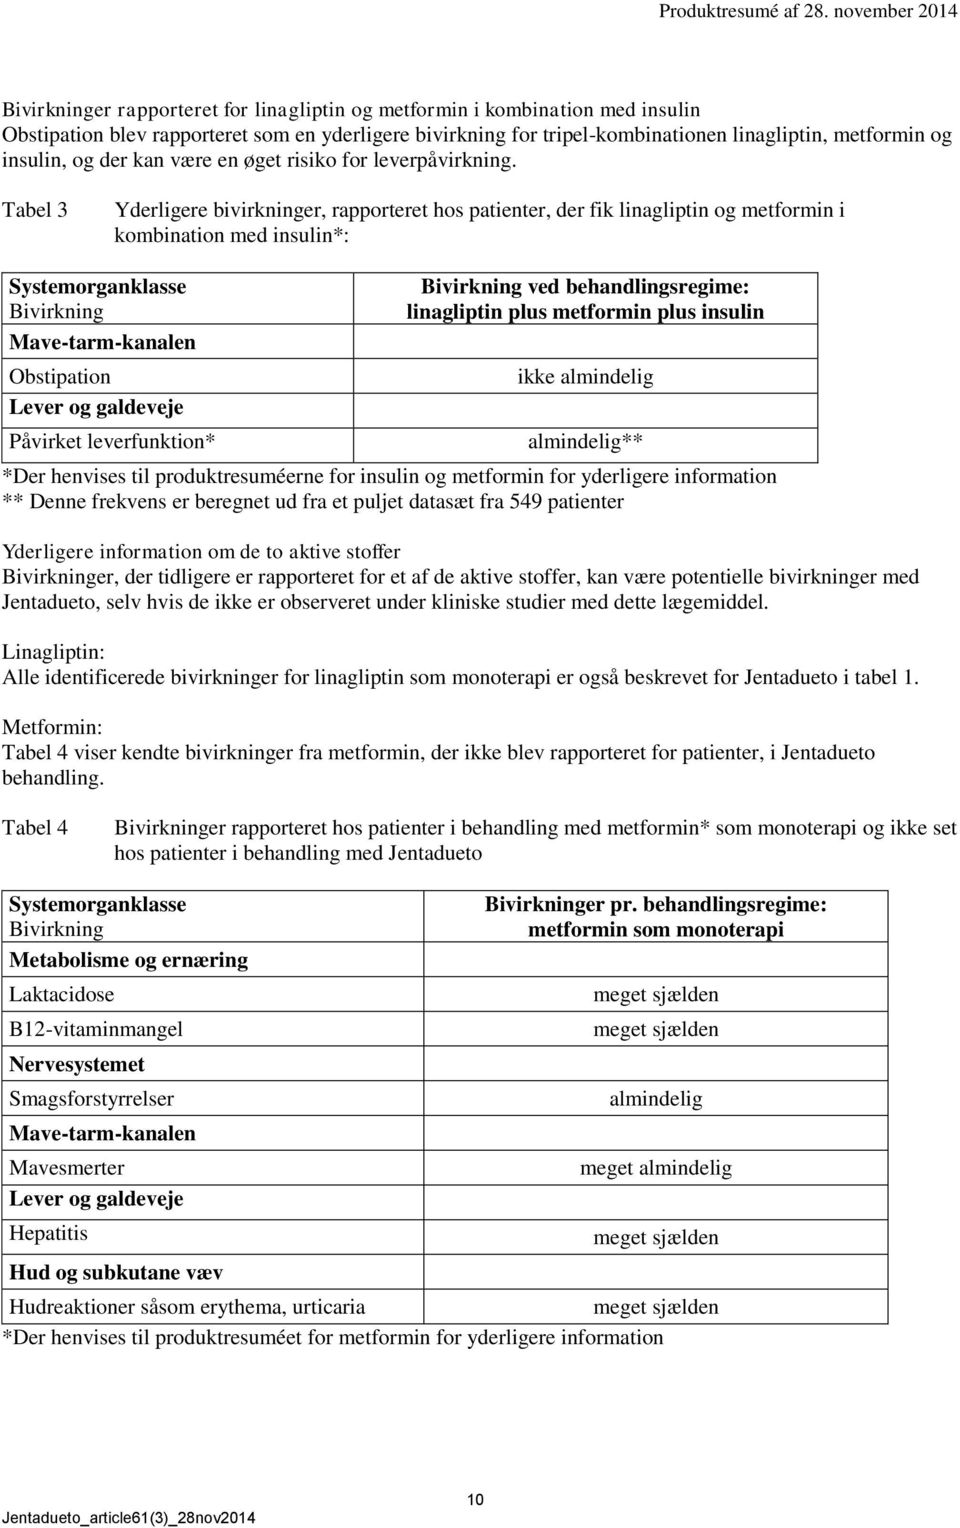 Tabel 3 Yderligere bivirkninger, rapporteret hos patienter, der fik linagliptin og metformin i kombination med insulin*: Systemorganklasse Bivirkning Mave-tarm-kanalen Obstipation Lever og galdeveje